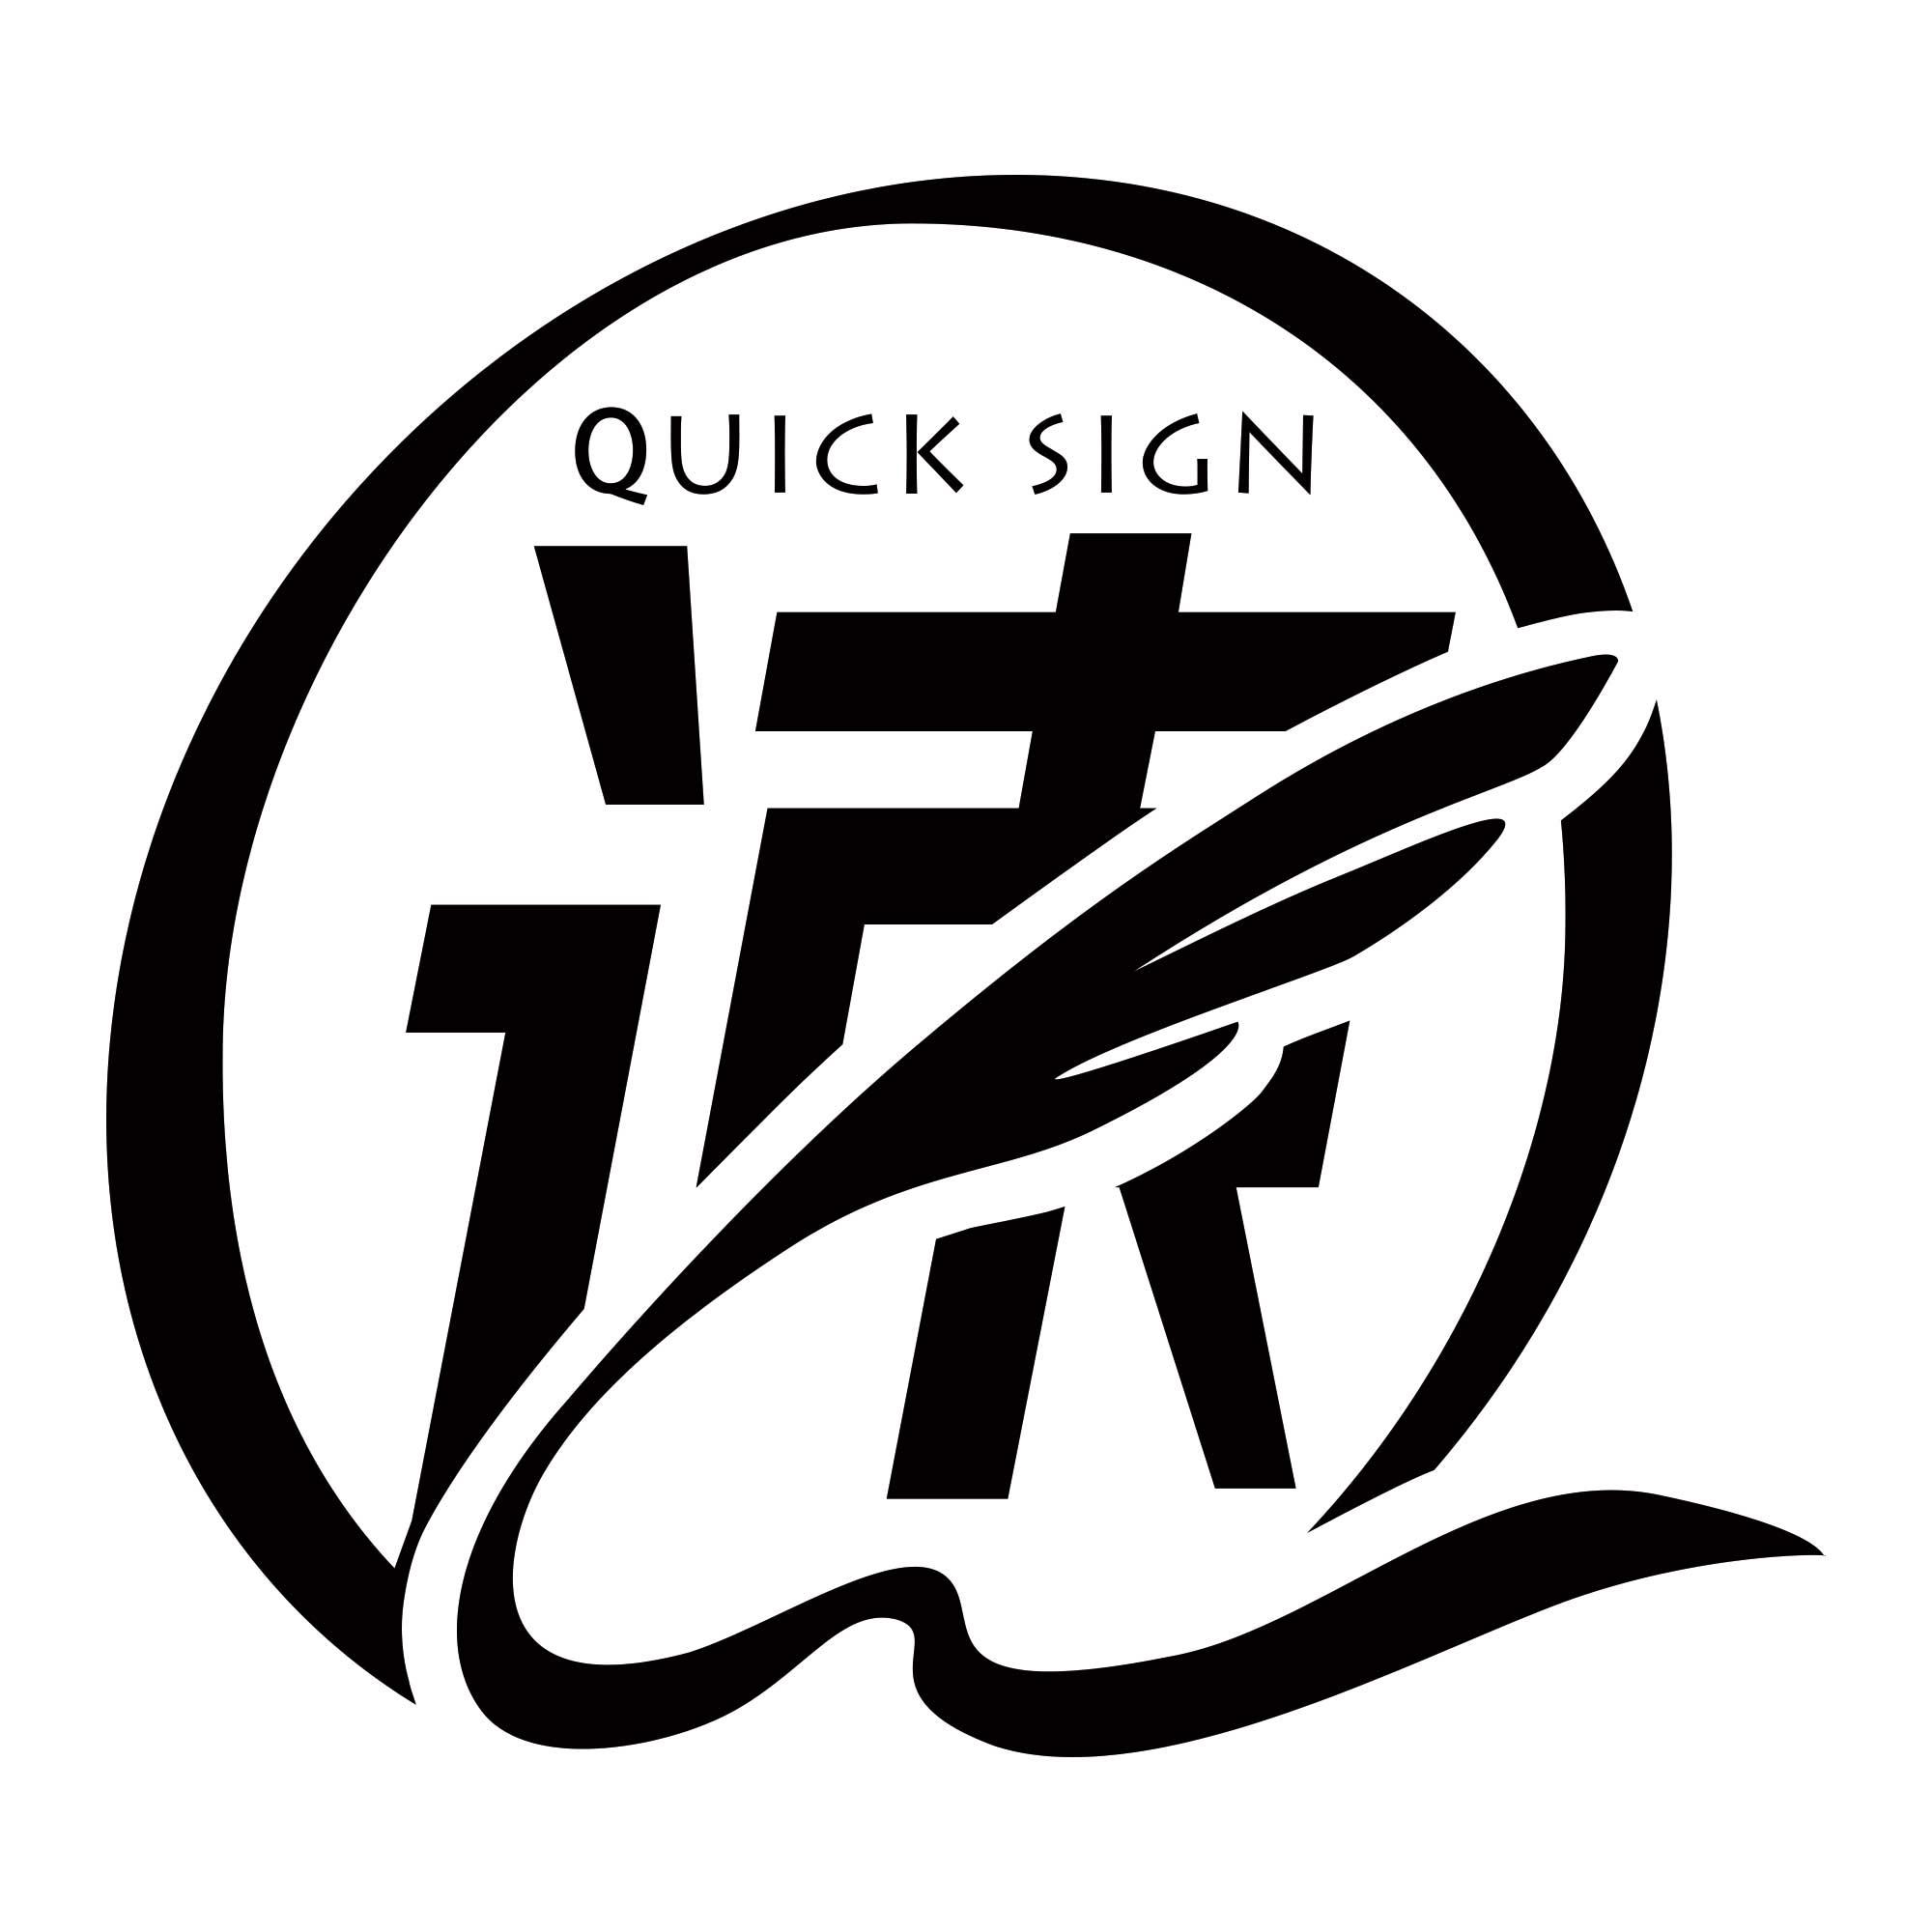 商标文字速 quick sign商标注册号 50788408,商标申请人广东省电子